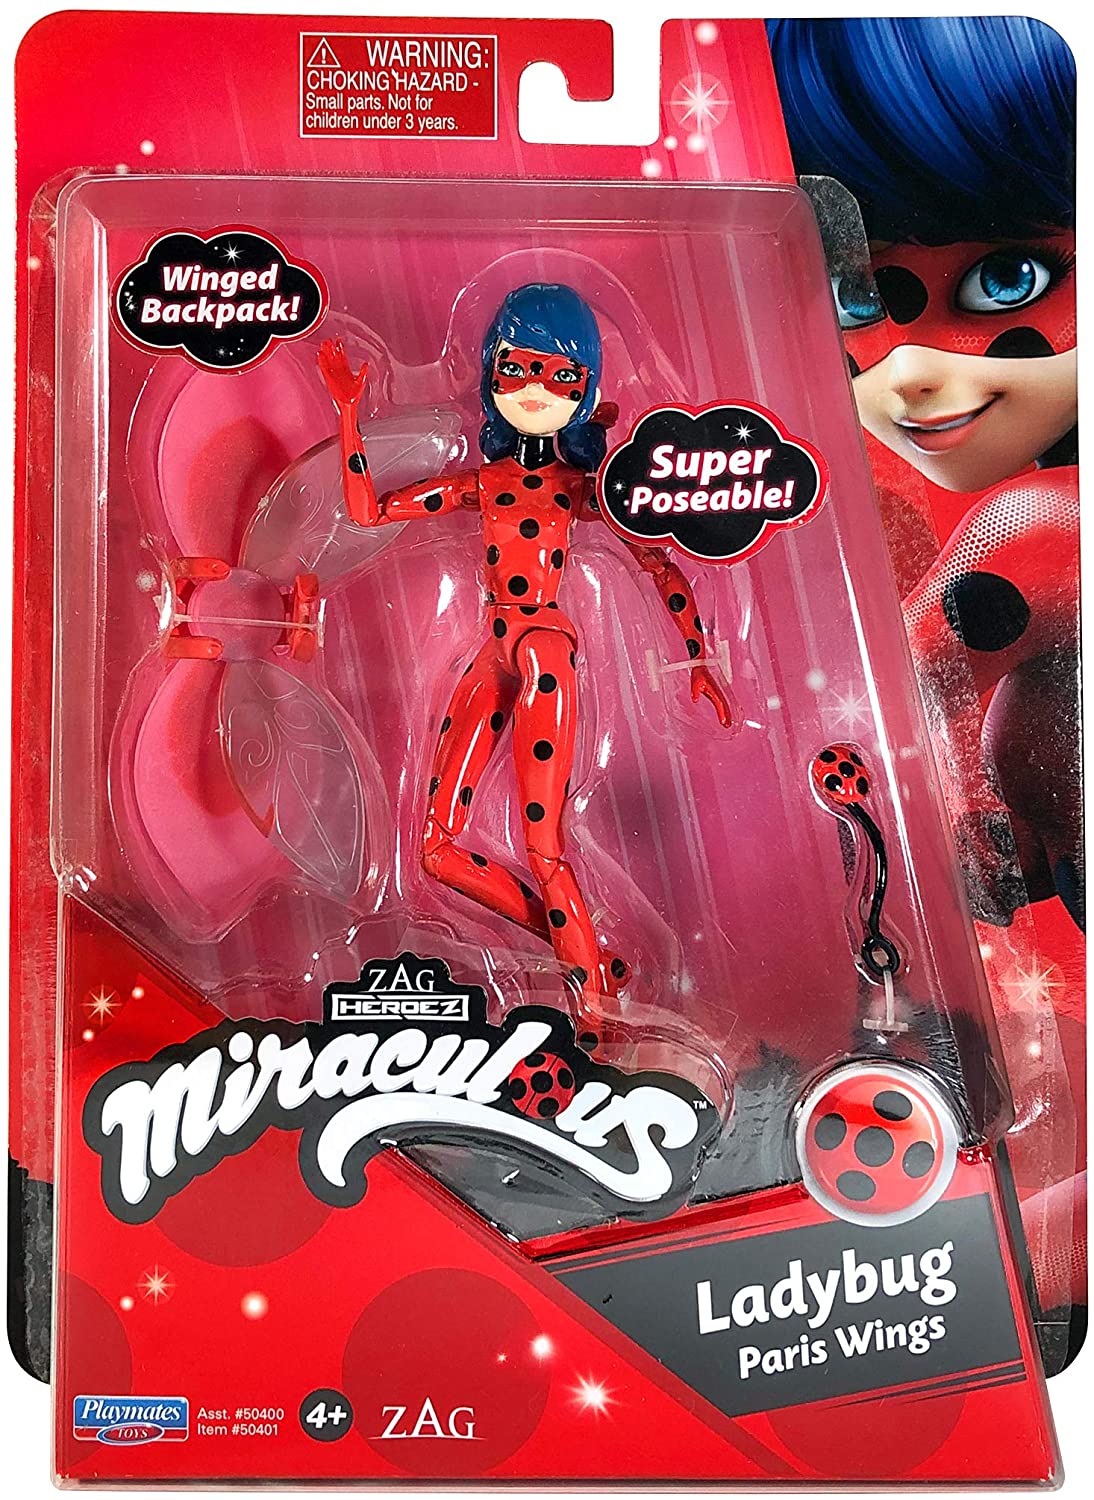 Cat Noir - Battle Wings - Miraculous Ladybug action figure